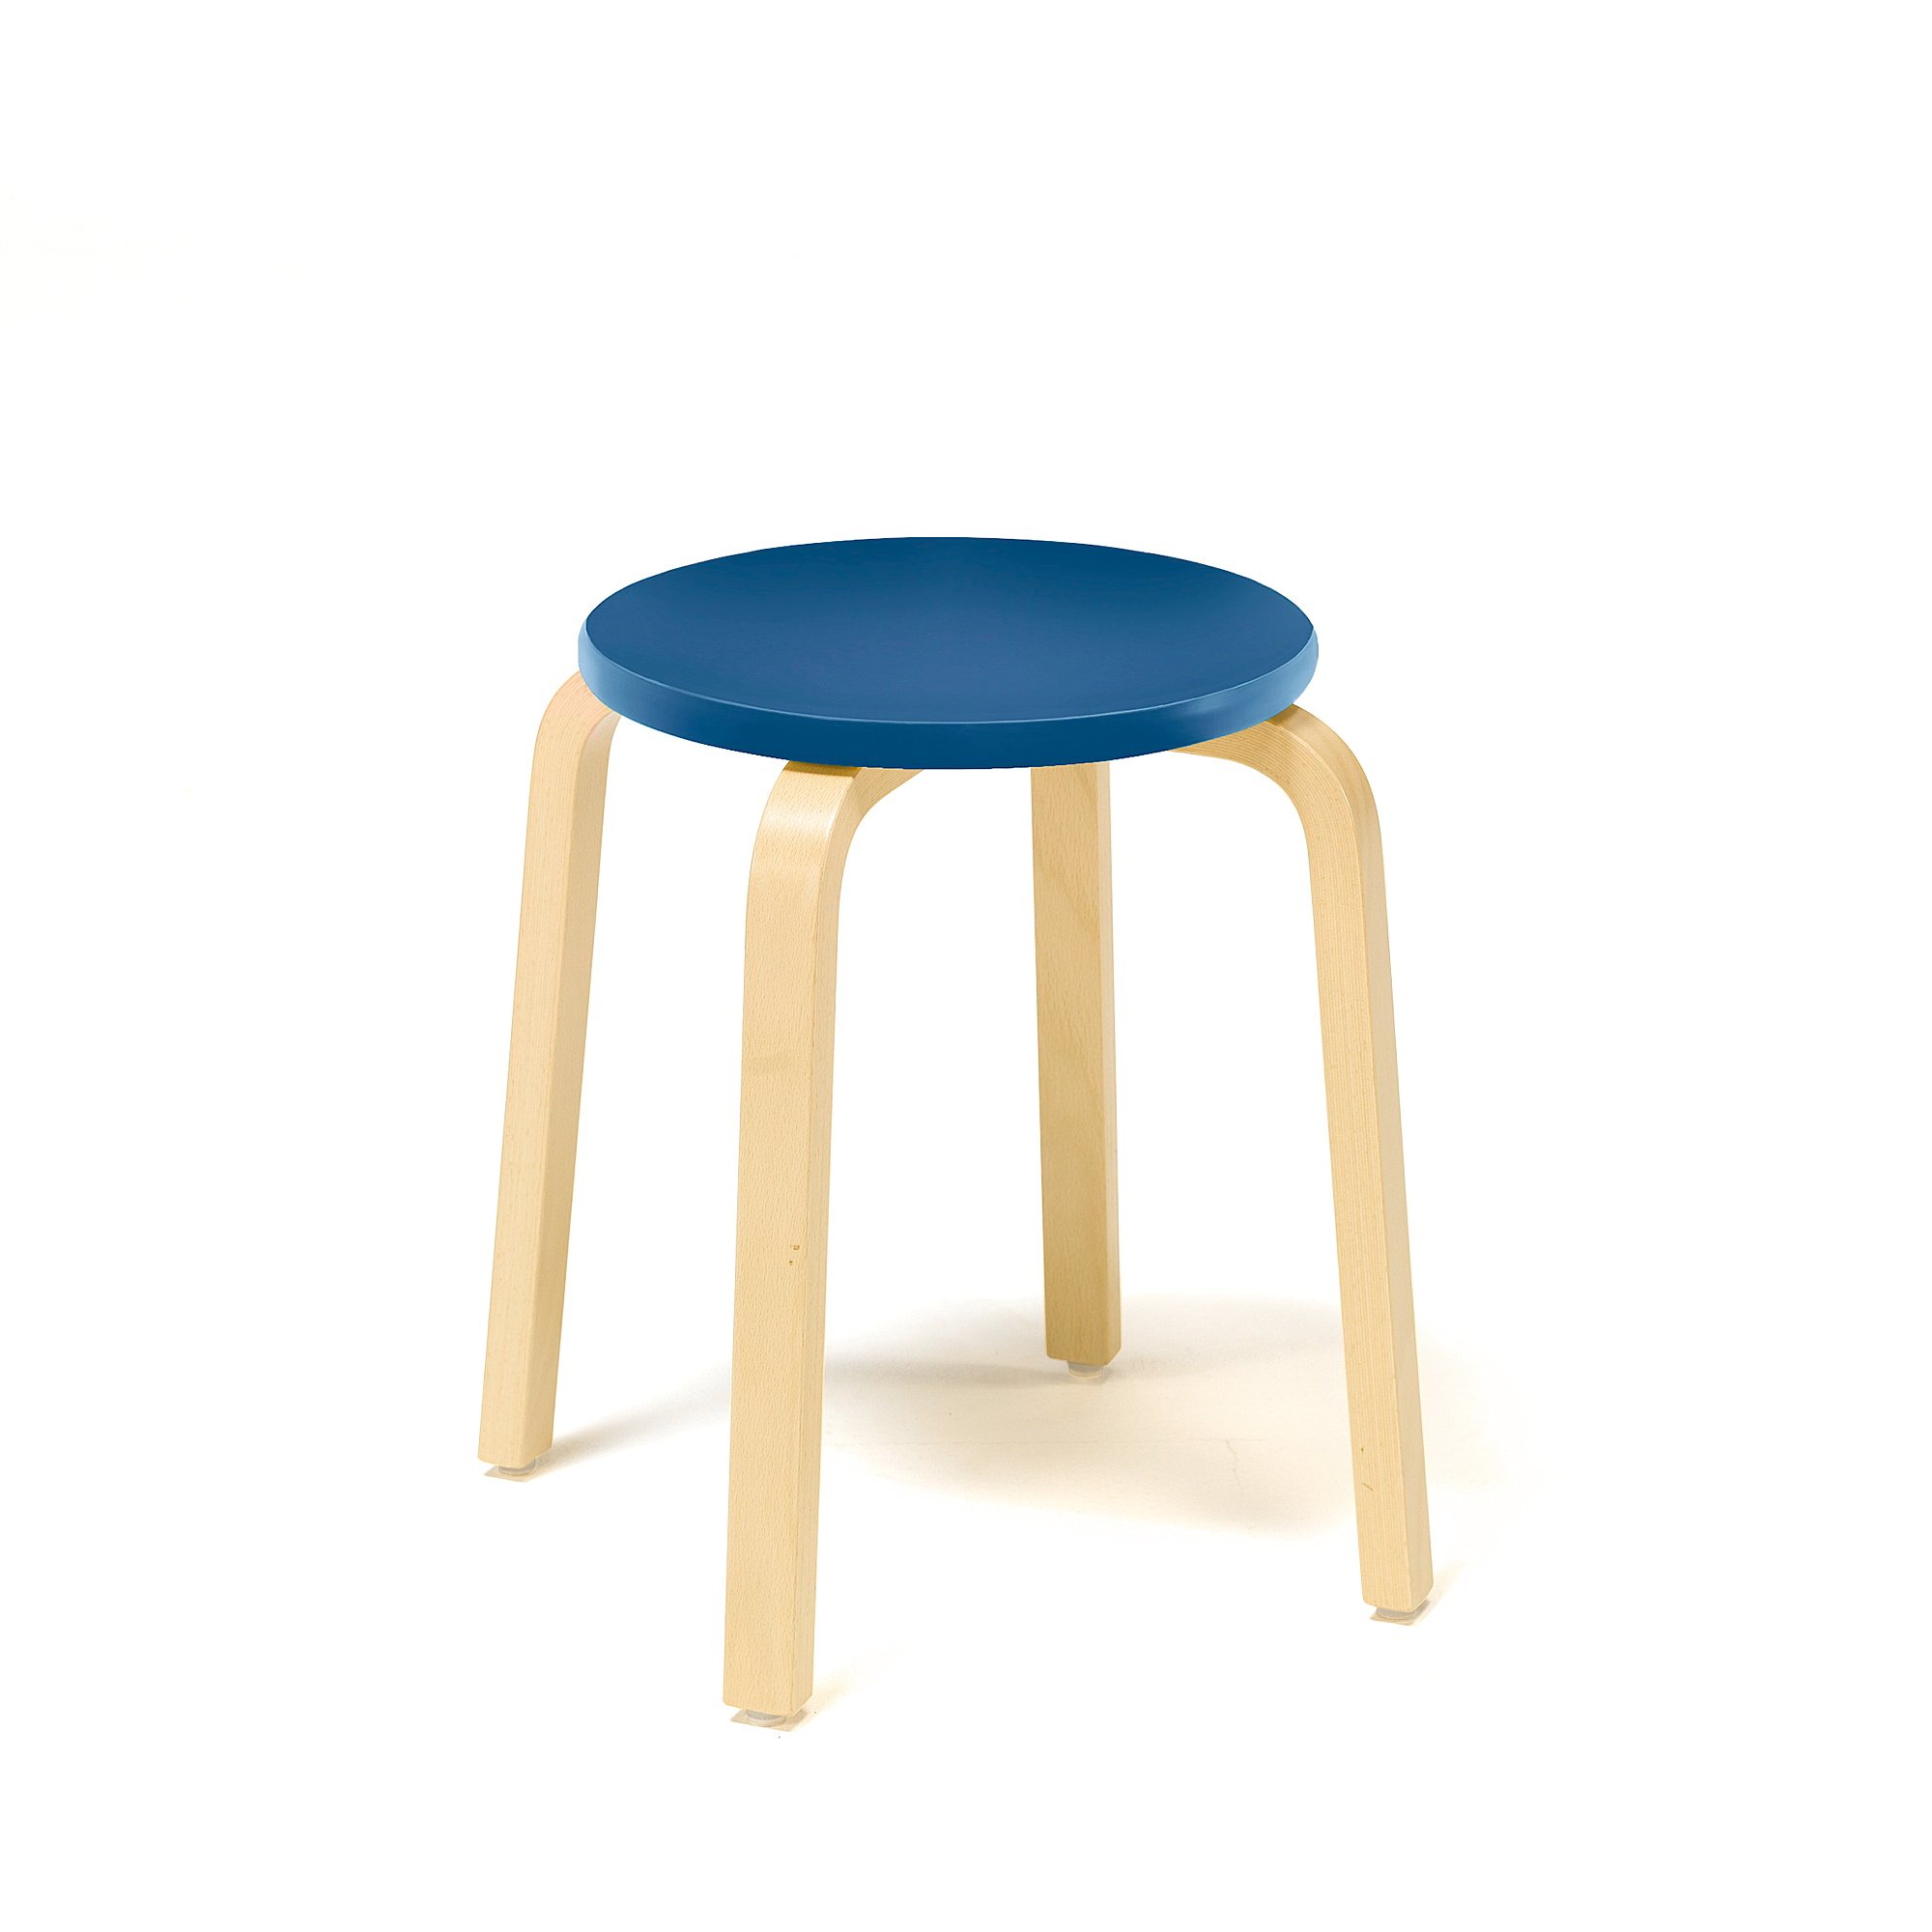 Stolička NEMO, výška 430 mm, bříza, modrá